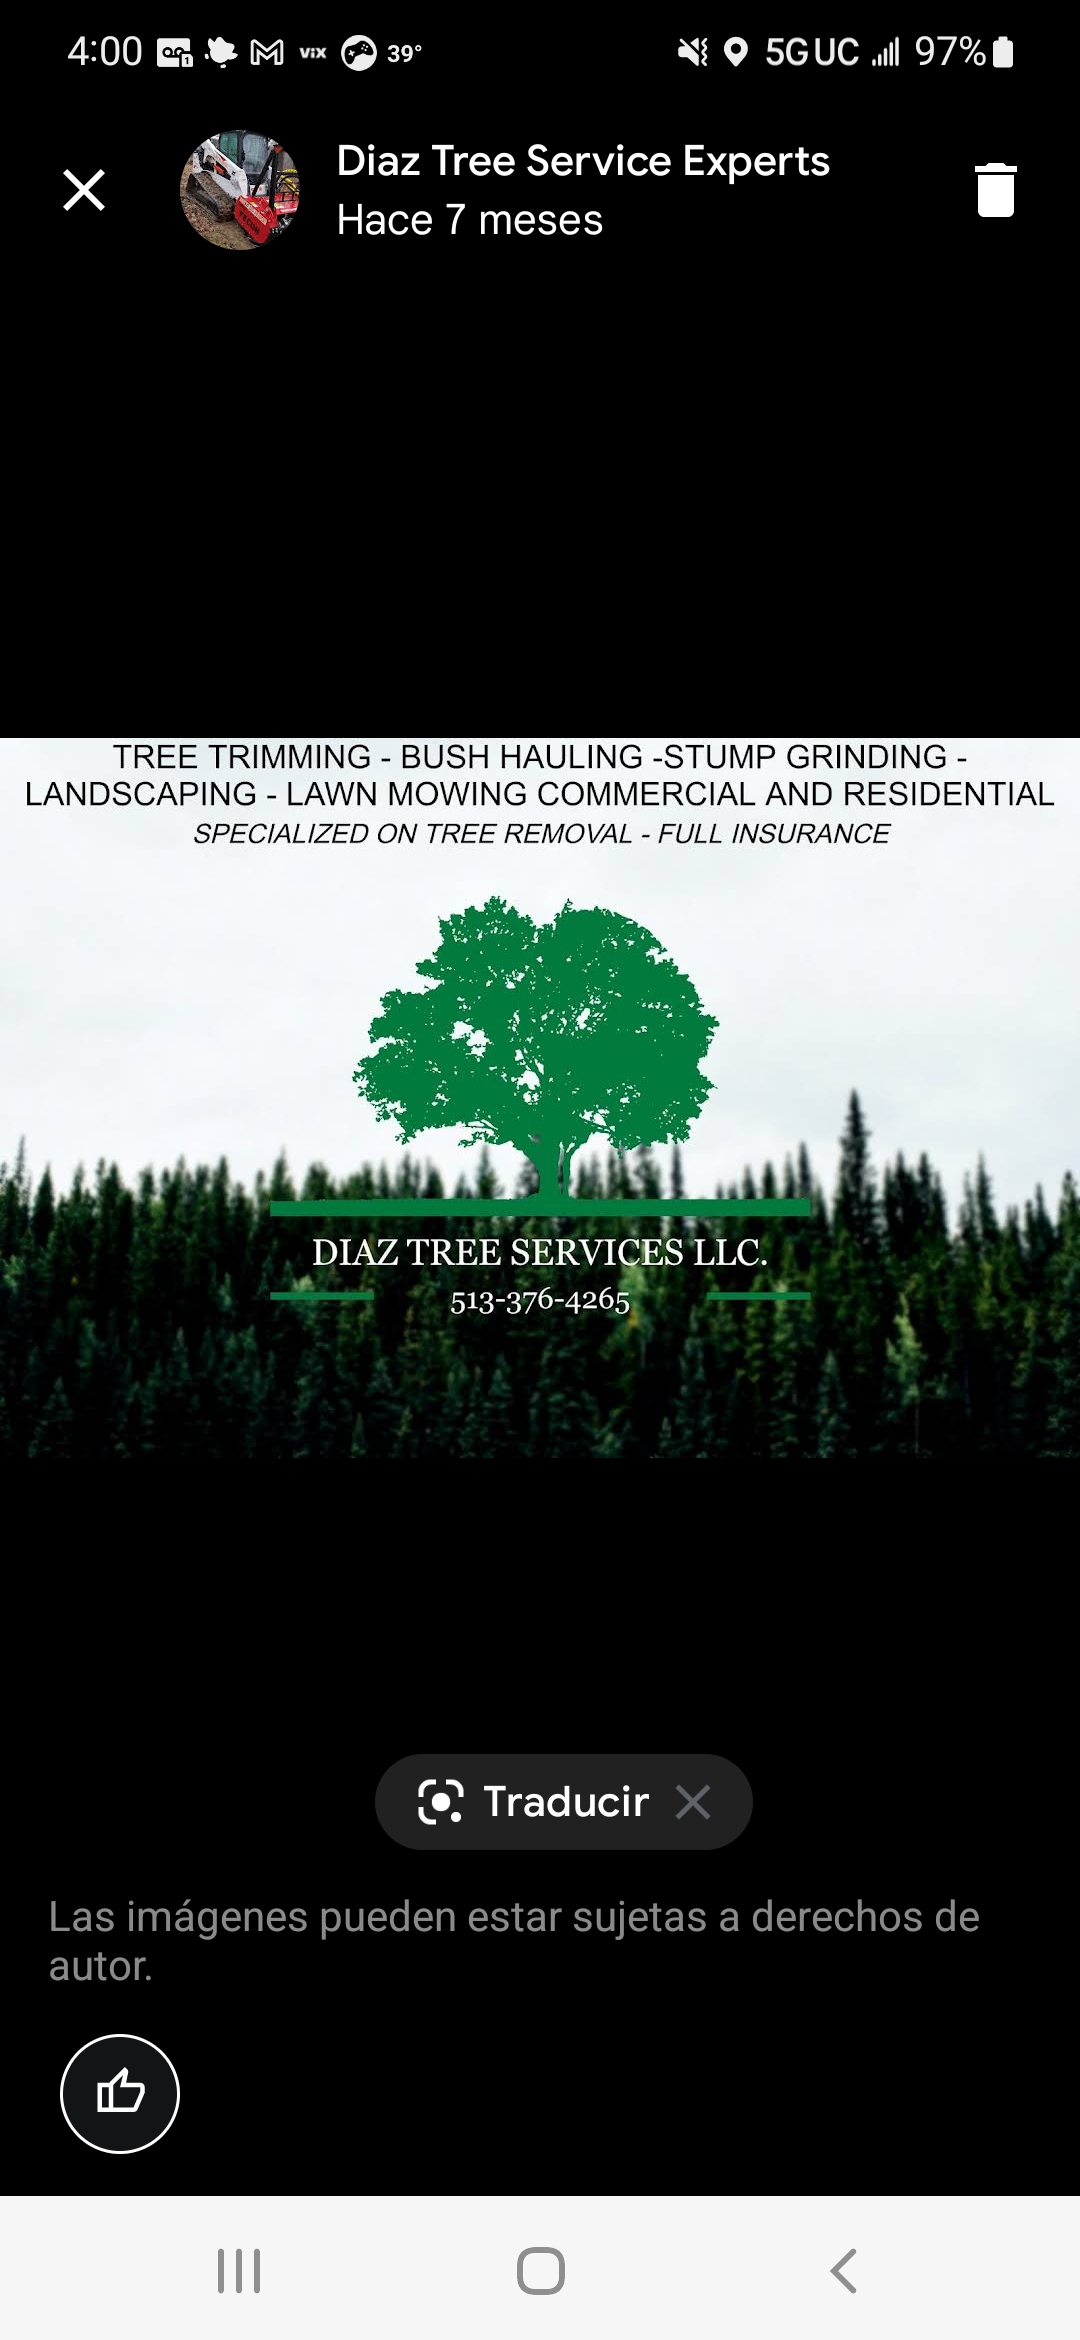 Diaz Tree Service Experts, LLC Logo